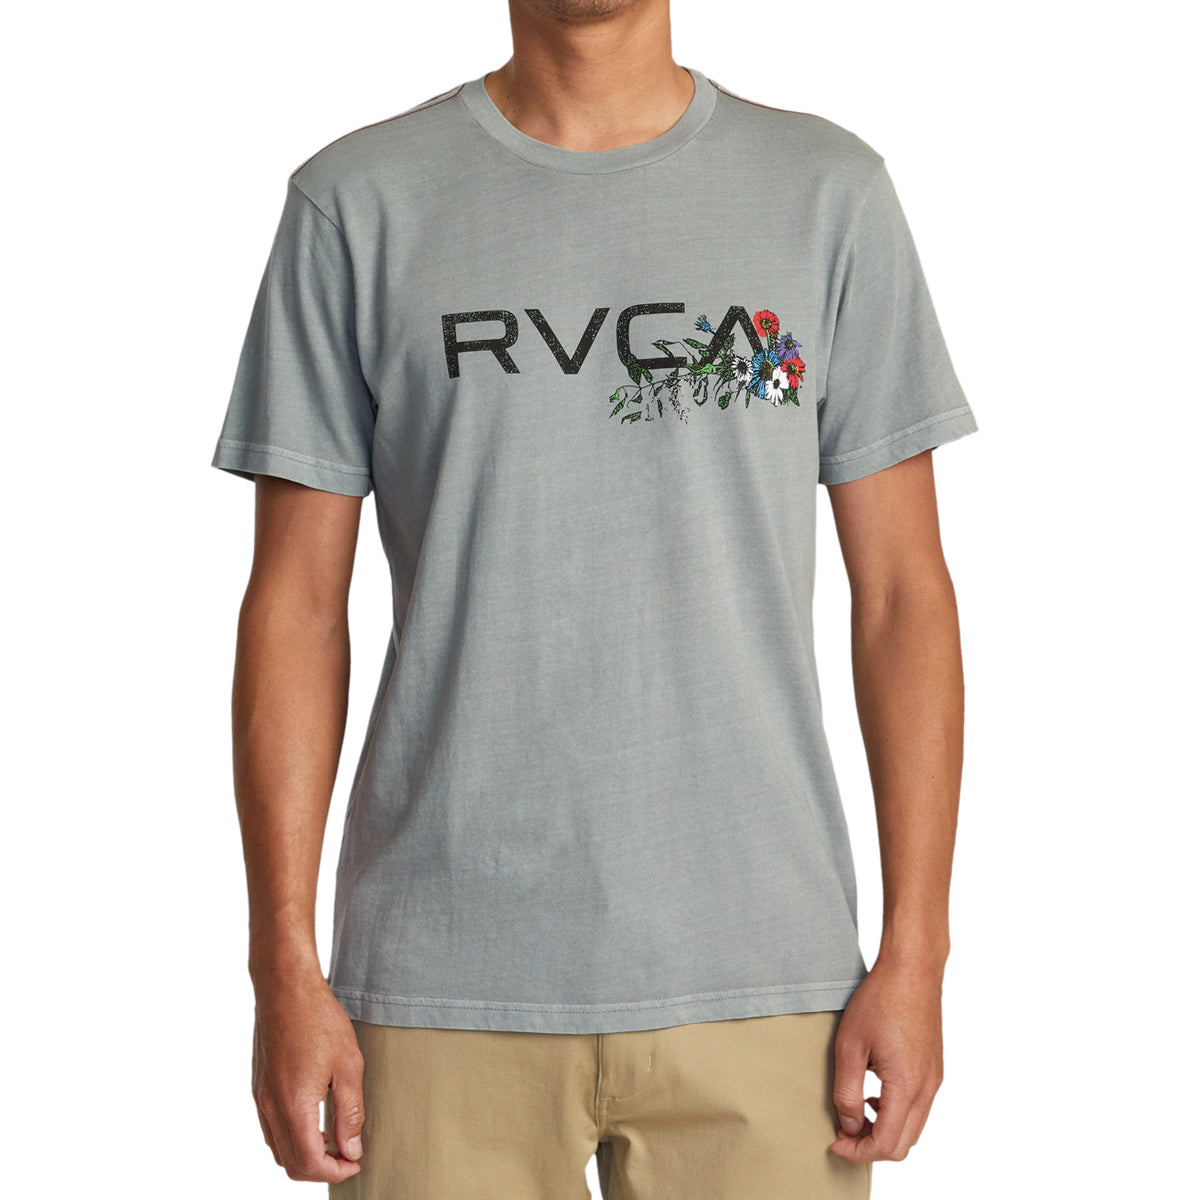 RVCA Arrangement T-Shirt - Monument image 2